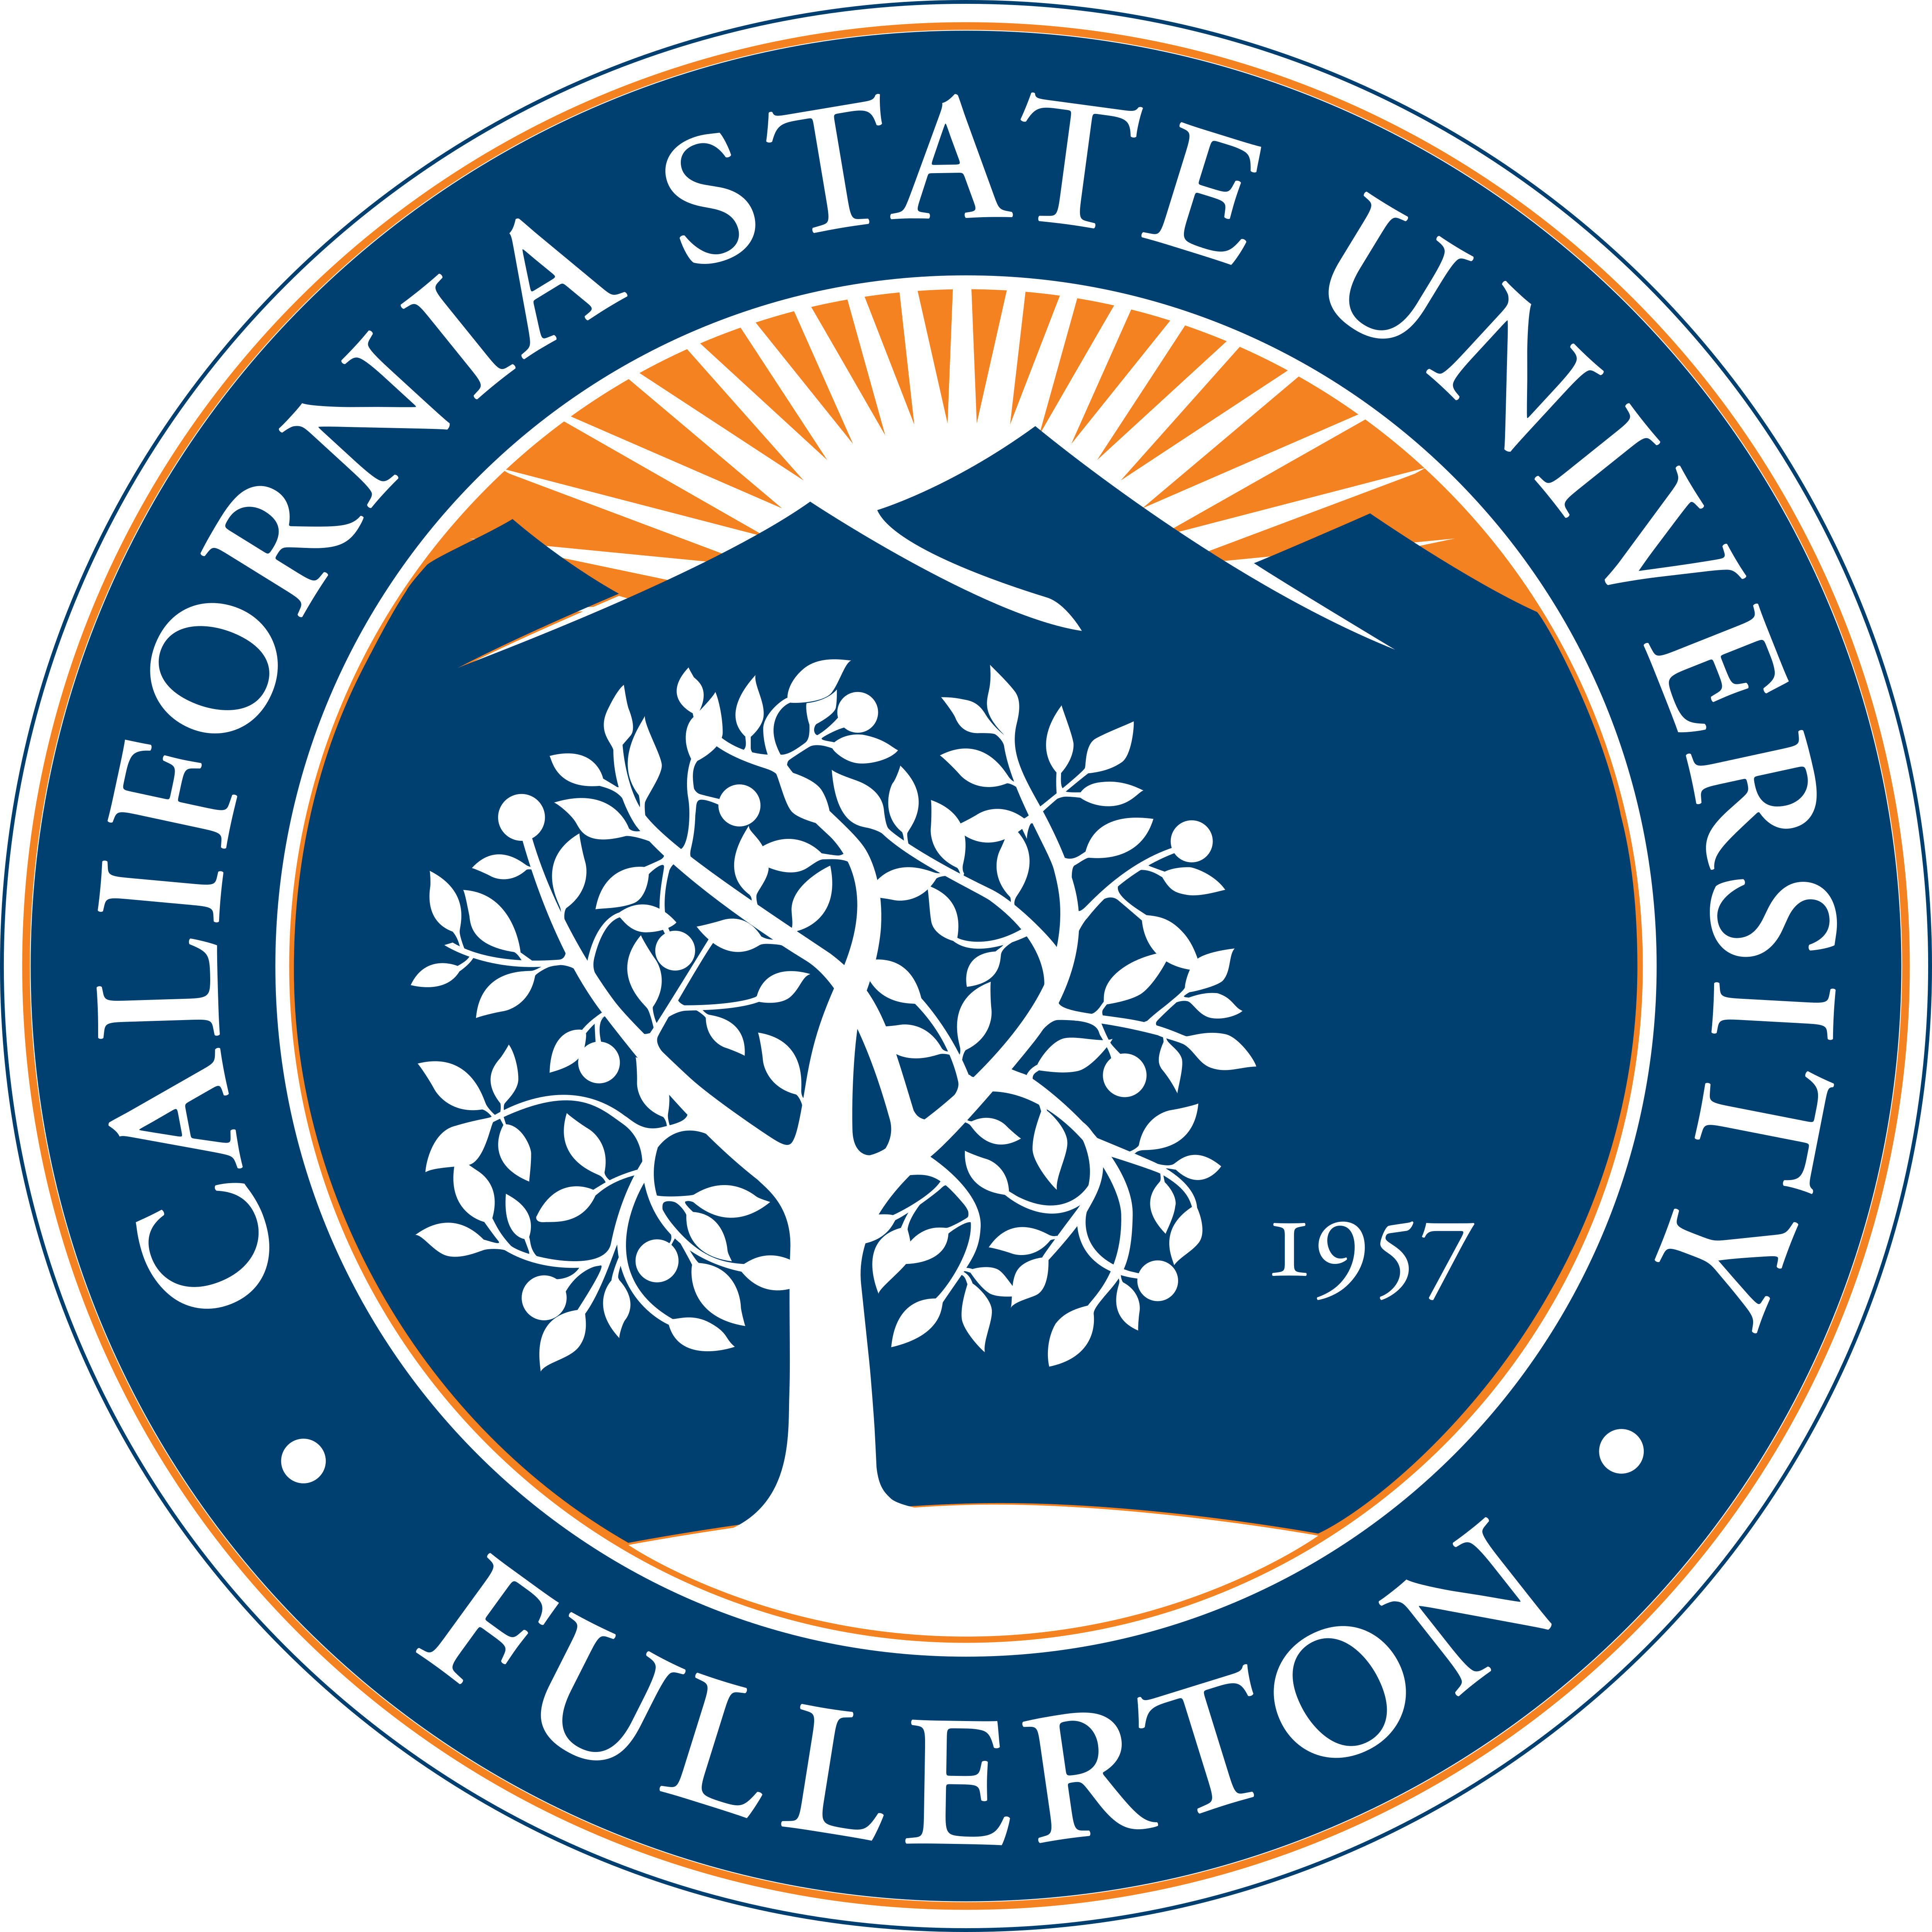 California State University, Fullerton – Logos Download